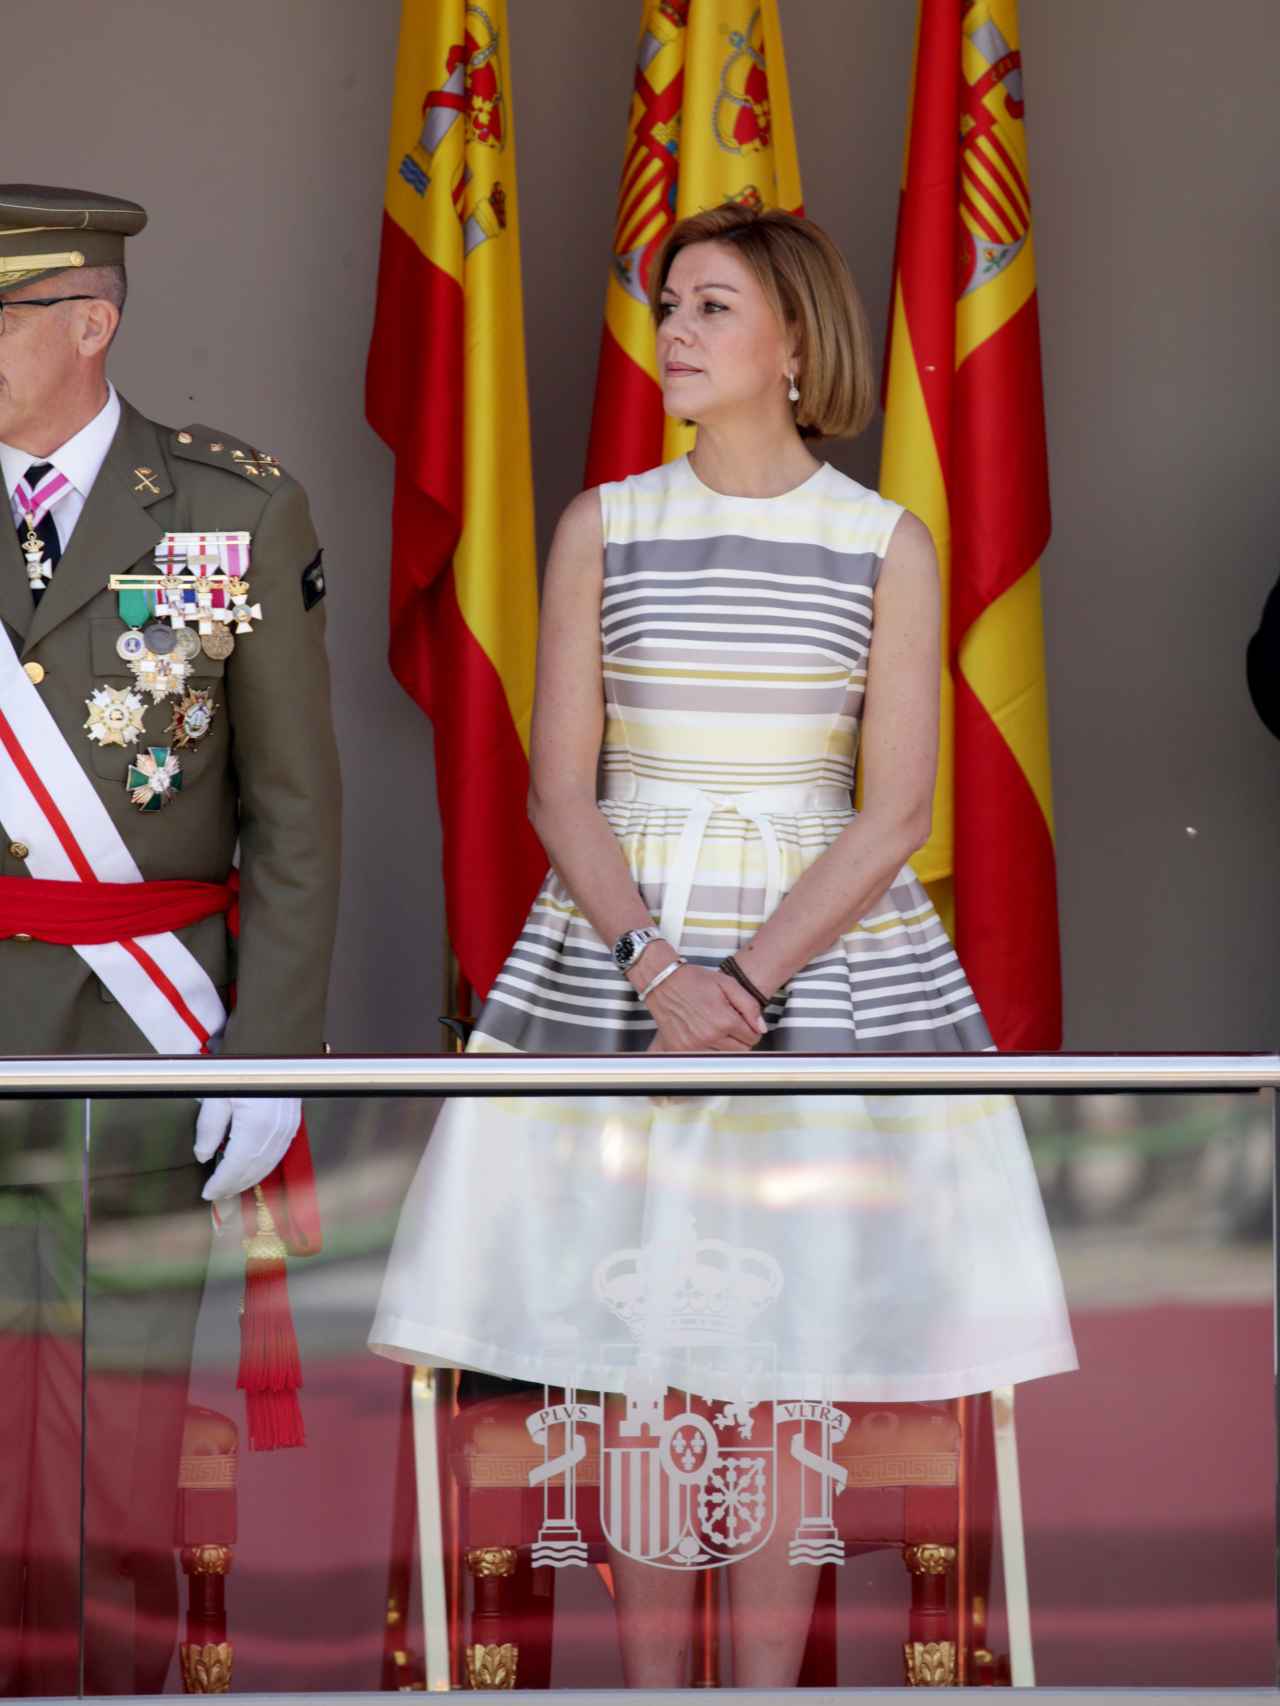 La ministra de Defensa, María Dolores Cospedal, ha llevado un vestido beige con vuelo en la falda y rayas.